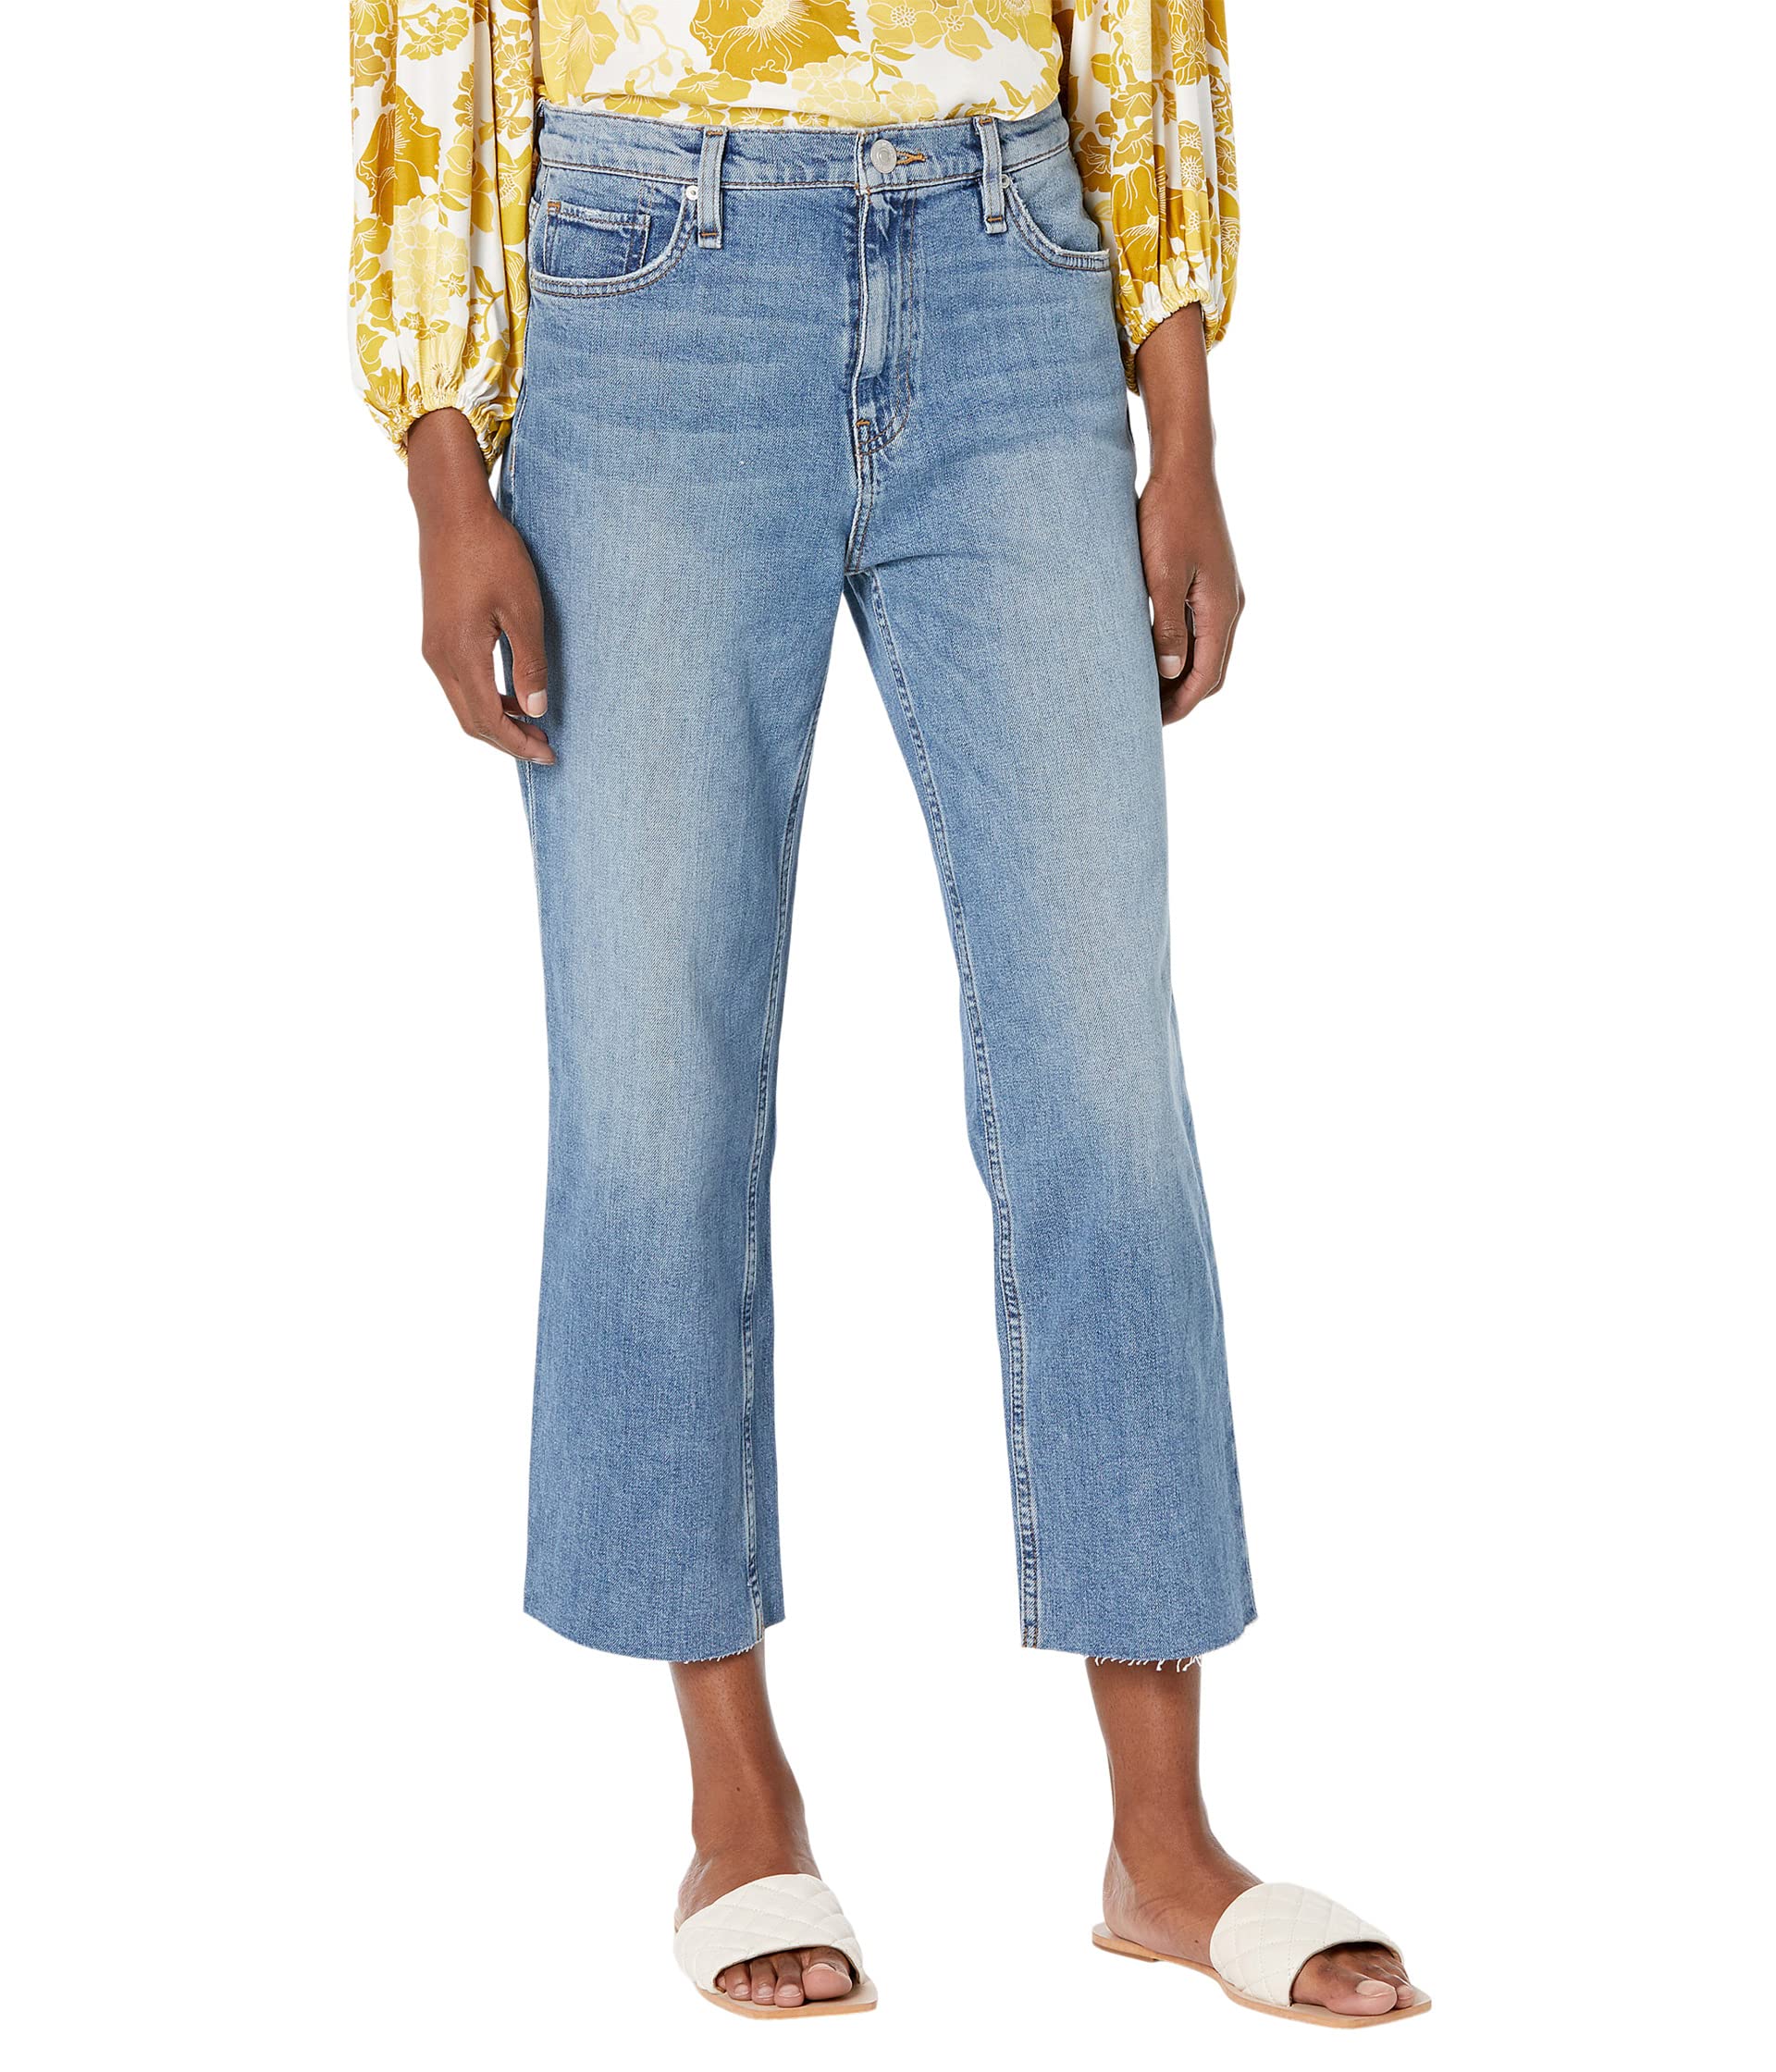 Джинсы Hudson Jeans, Remi High-Rise Straight Crop in Summer Song джинсы hudson jeans holly high rise straight crop in angora color block